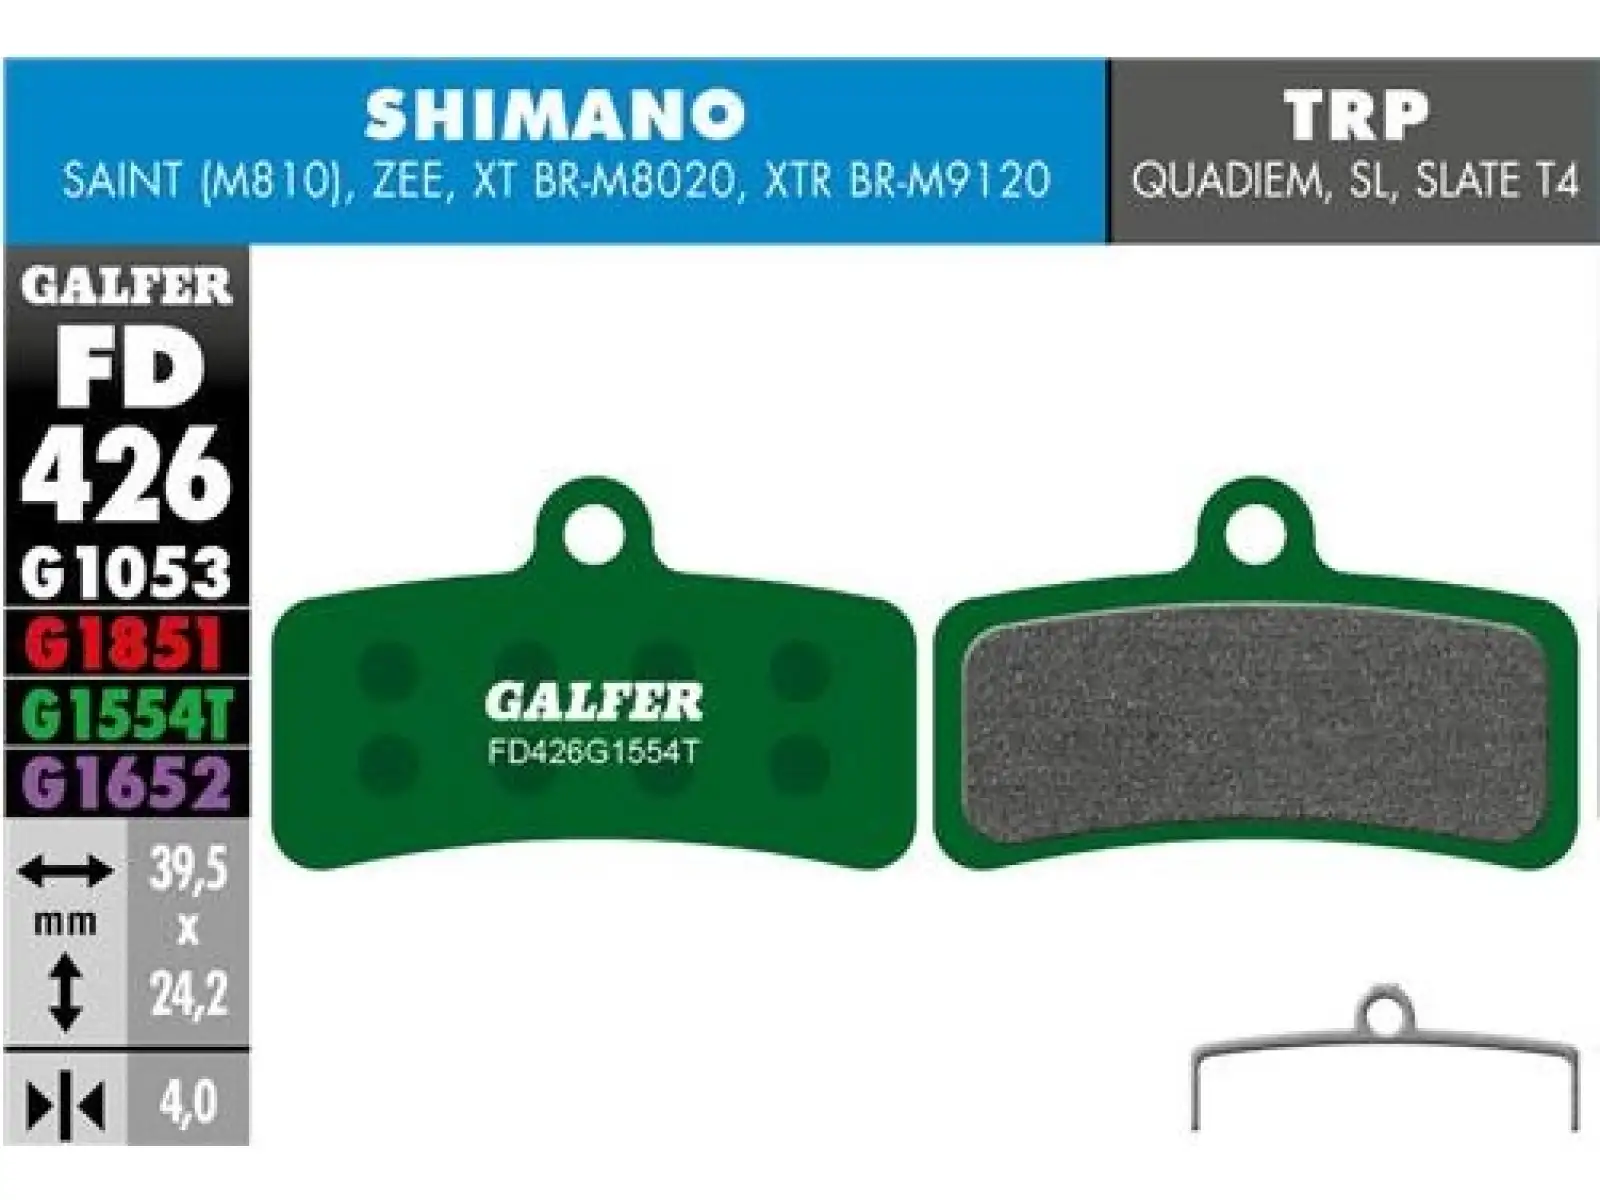 Galfer FD426 Pro G1554T brzdové destičky pro Shimano/Tektro/TRP